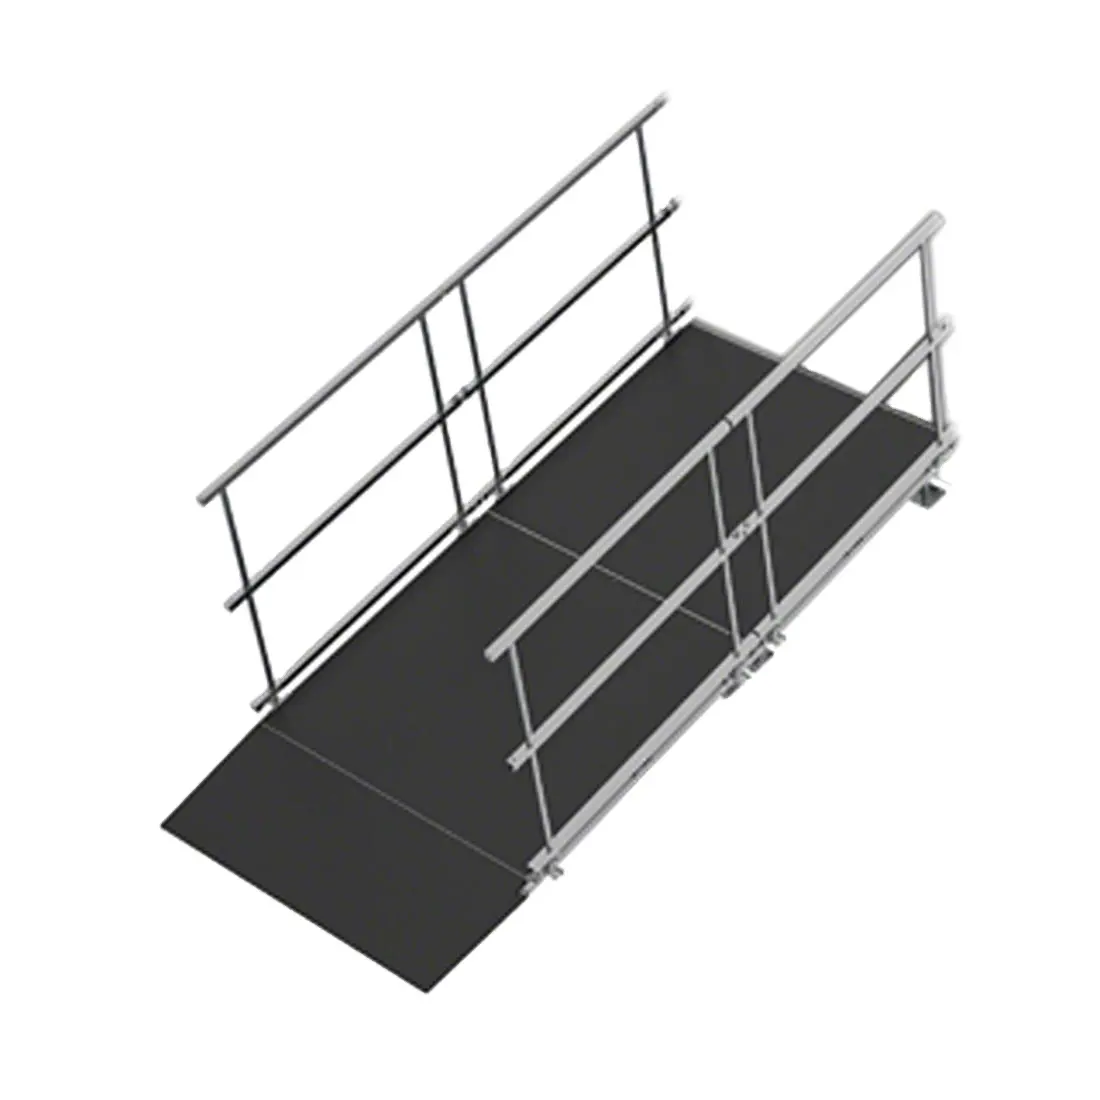 ADA Rollstuhl rampe für 8 "High Stages klappbares, verstellbares, modulares Bühnen system für den Innenbereich